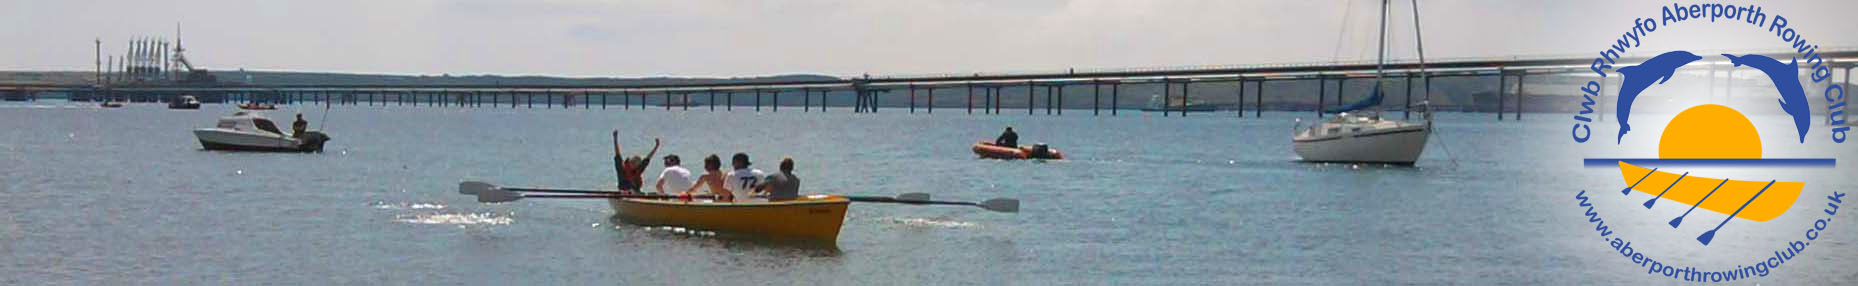 Clwb Rhwyfo Aberporth Rowing Club Rotating Header Image